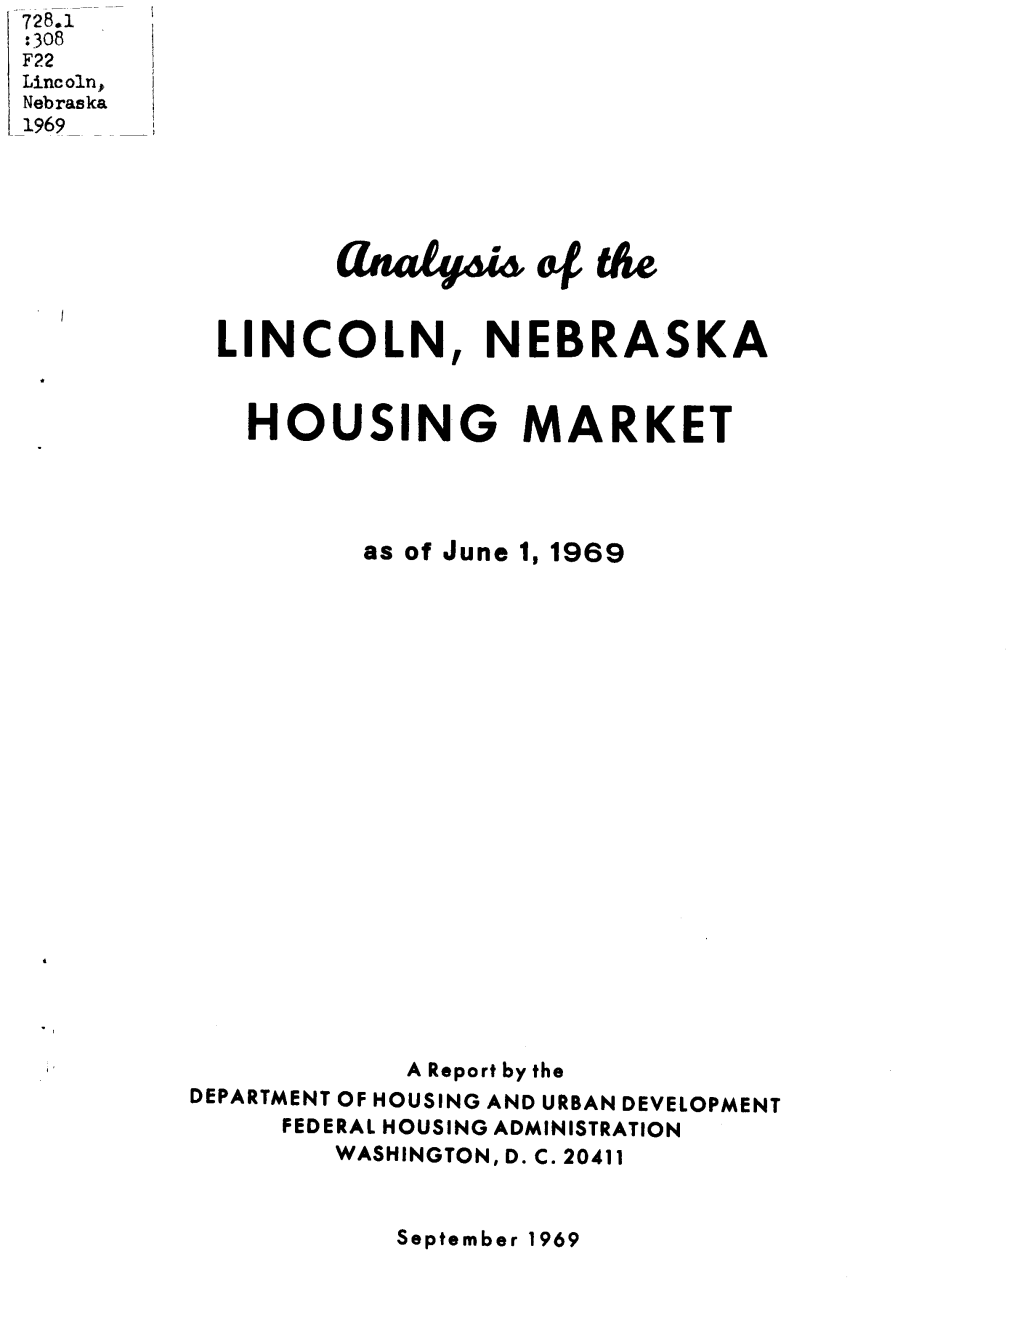 Analysis of the Lincoln, Nebraska Housing Market (1969)